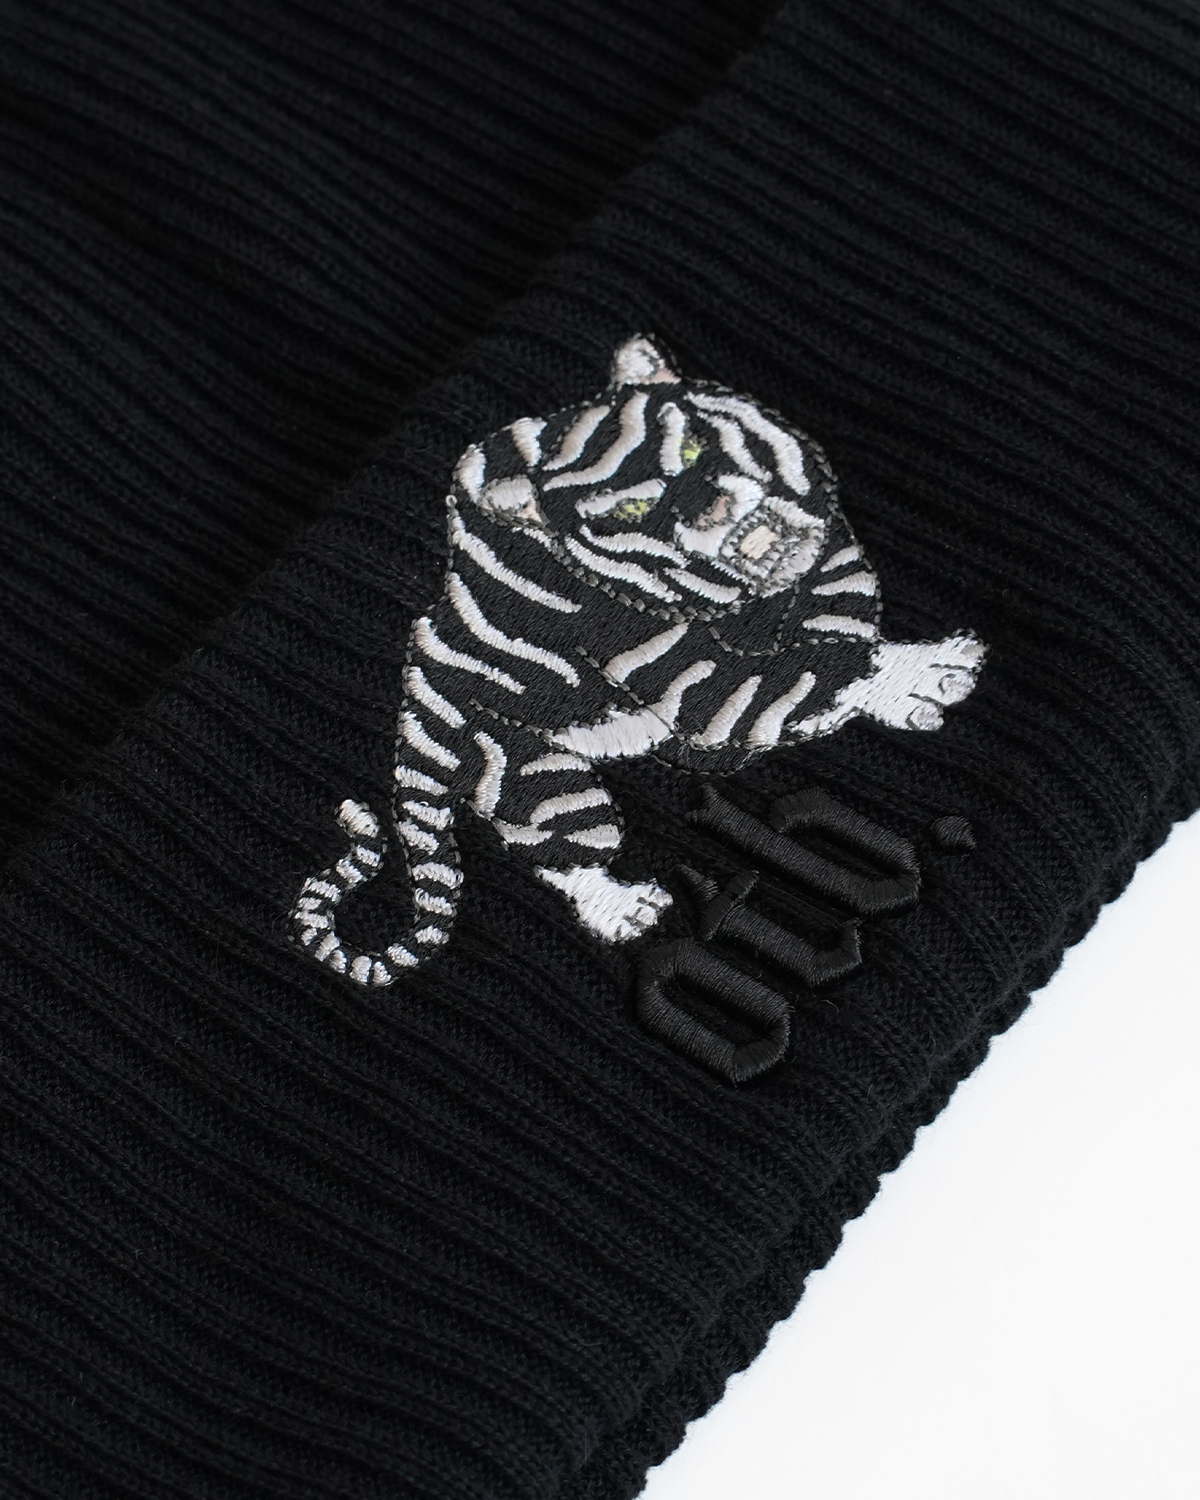 Black Tiger Beanie Hat